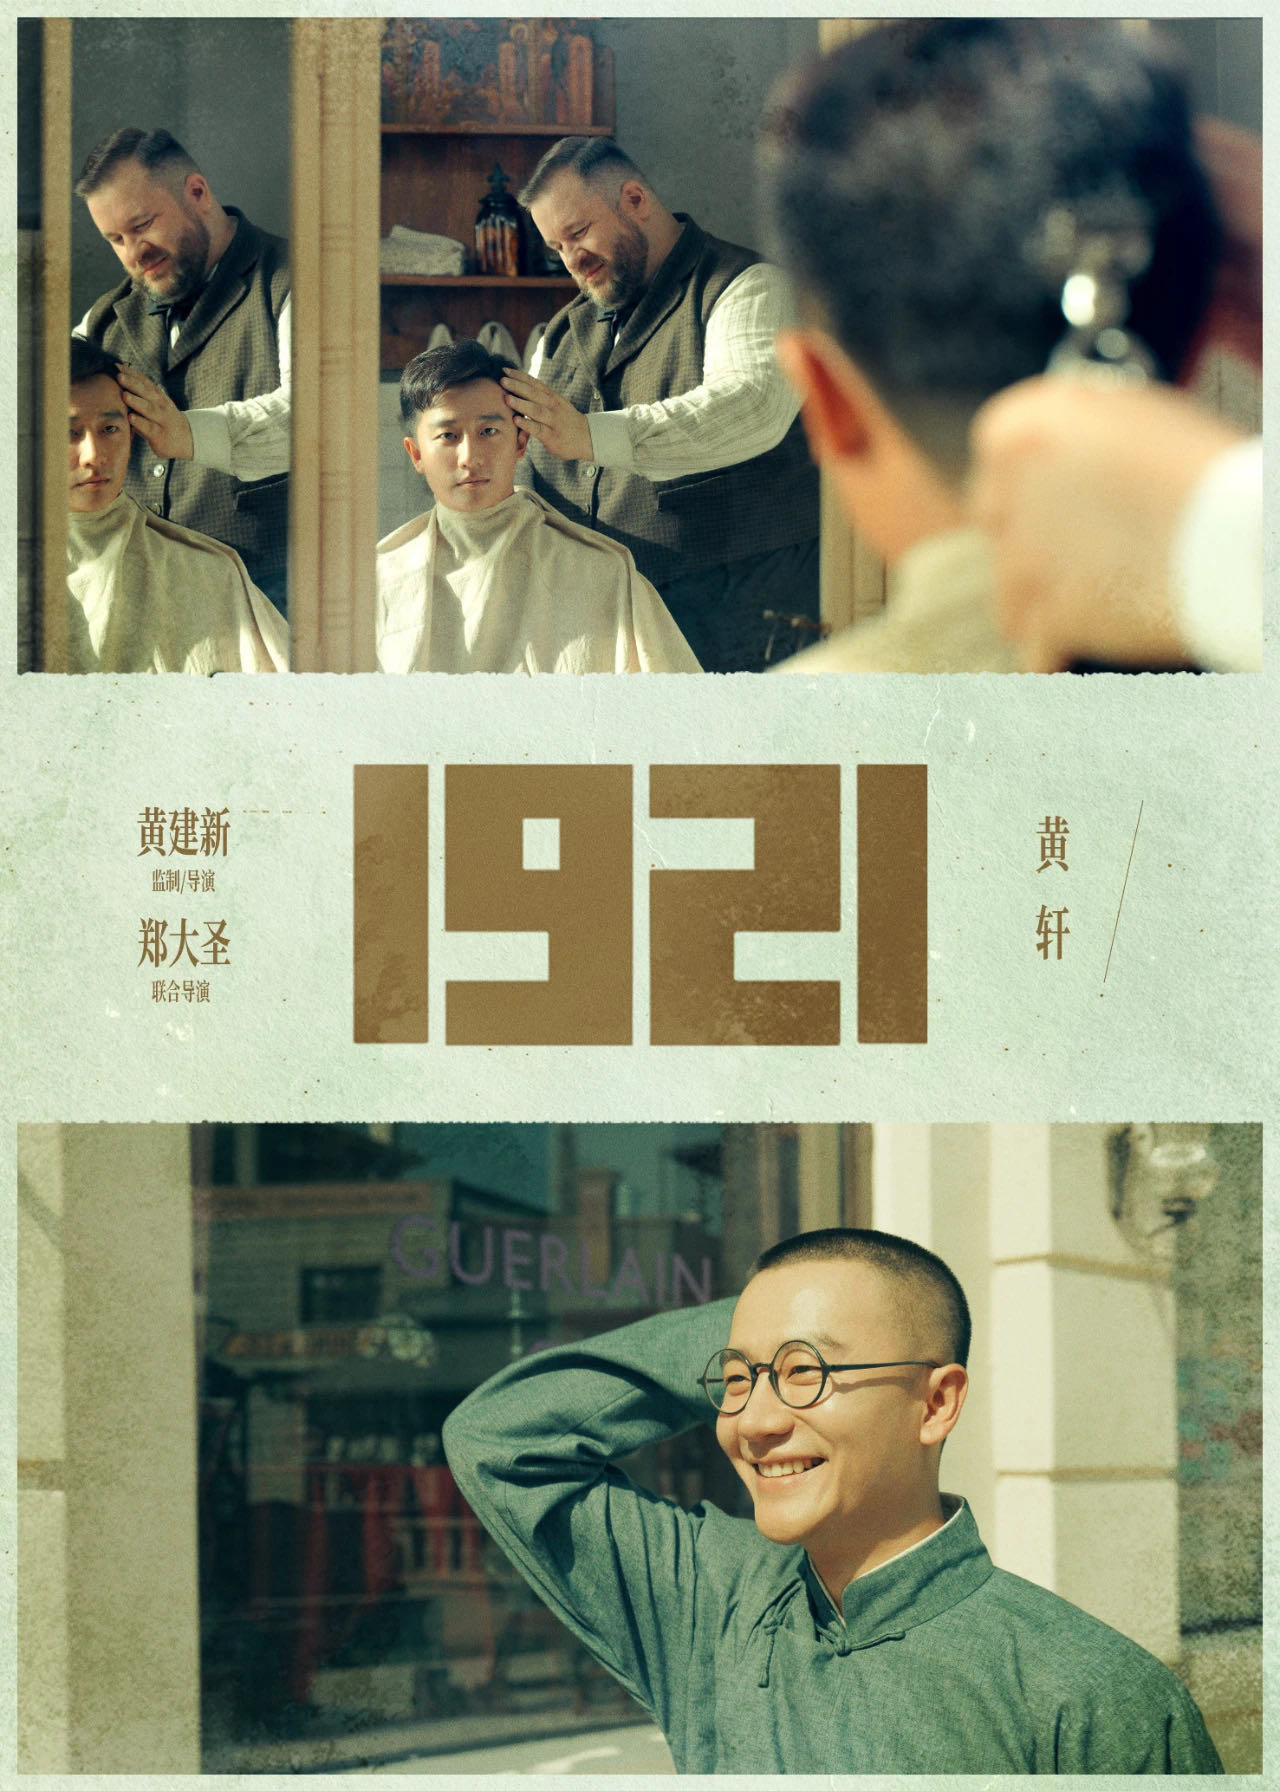 电影《1921》是由上海市委宣传部发起并指定拍摄的纪念建党100周年